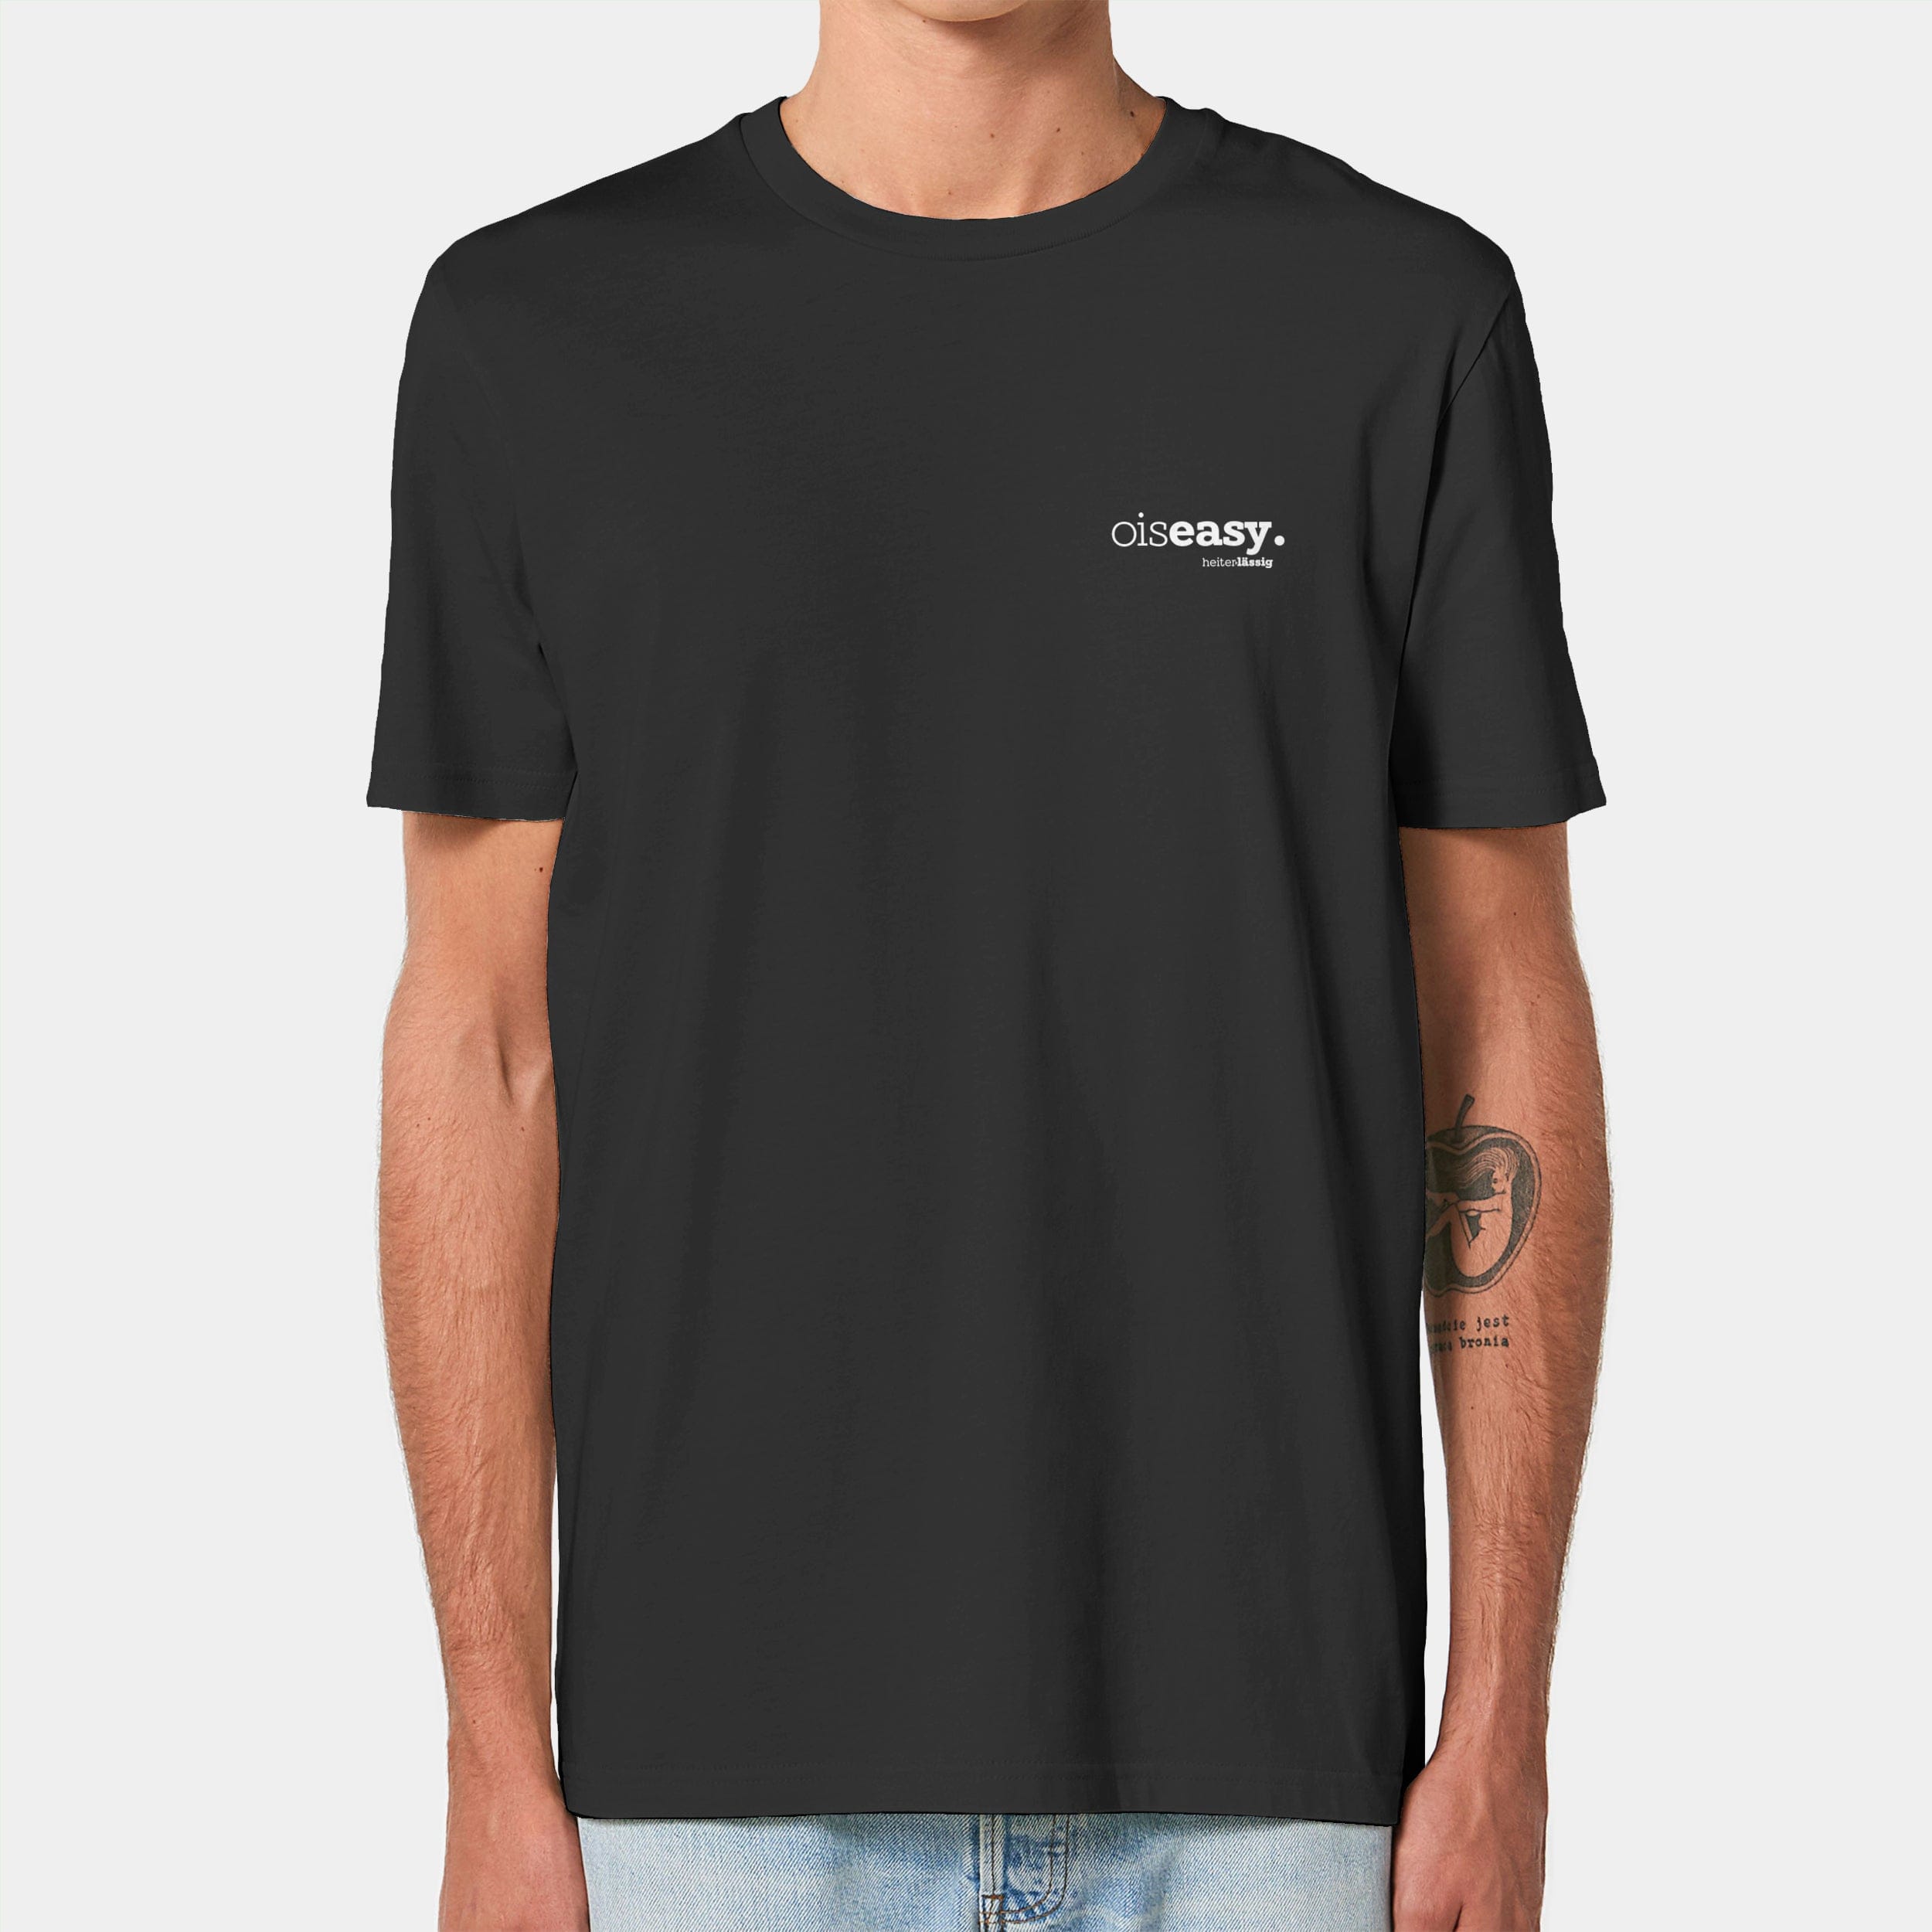 HEITER & LÄSSIG T-Shirt ORIGINAL "oiseasy" XXS / schwarz - aus nachhaltiger und fairer Produktion